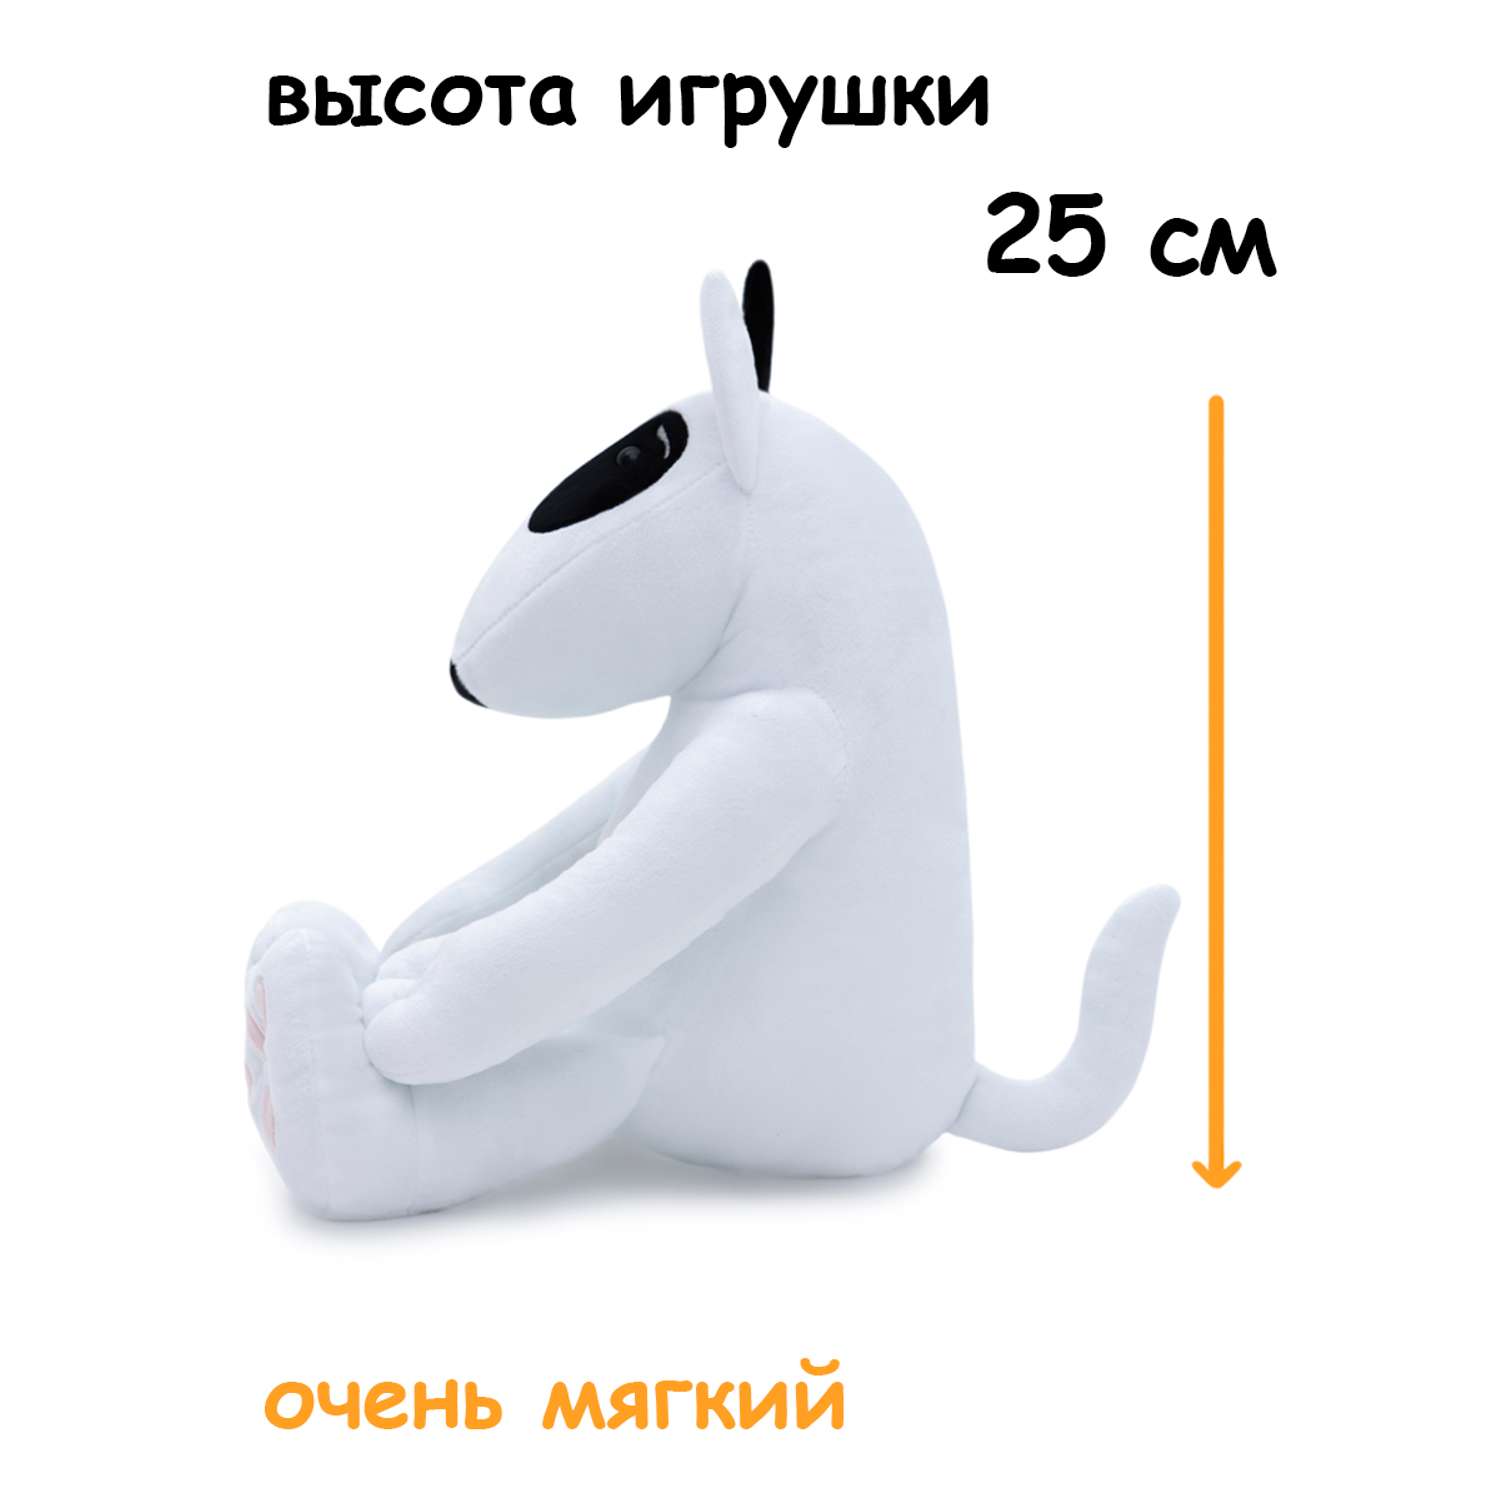 Мягкая игрушка Мягкие игрушки БелайТойс Плюшевая собака Hugo породы бультерьер с черным ухом 35 см - фото 4